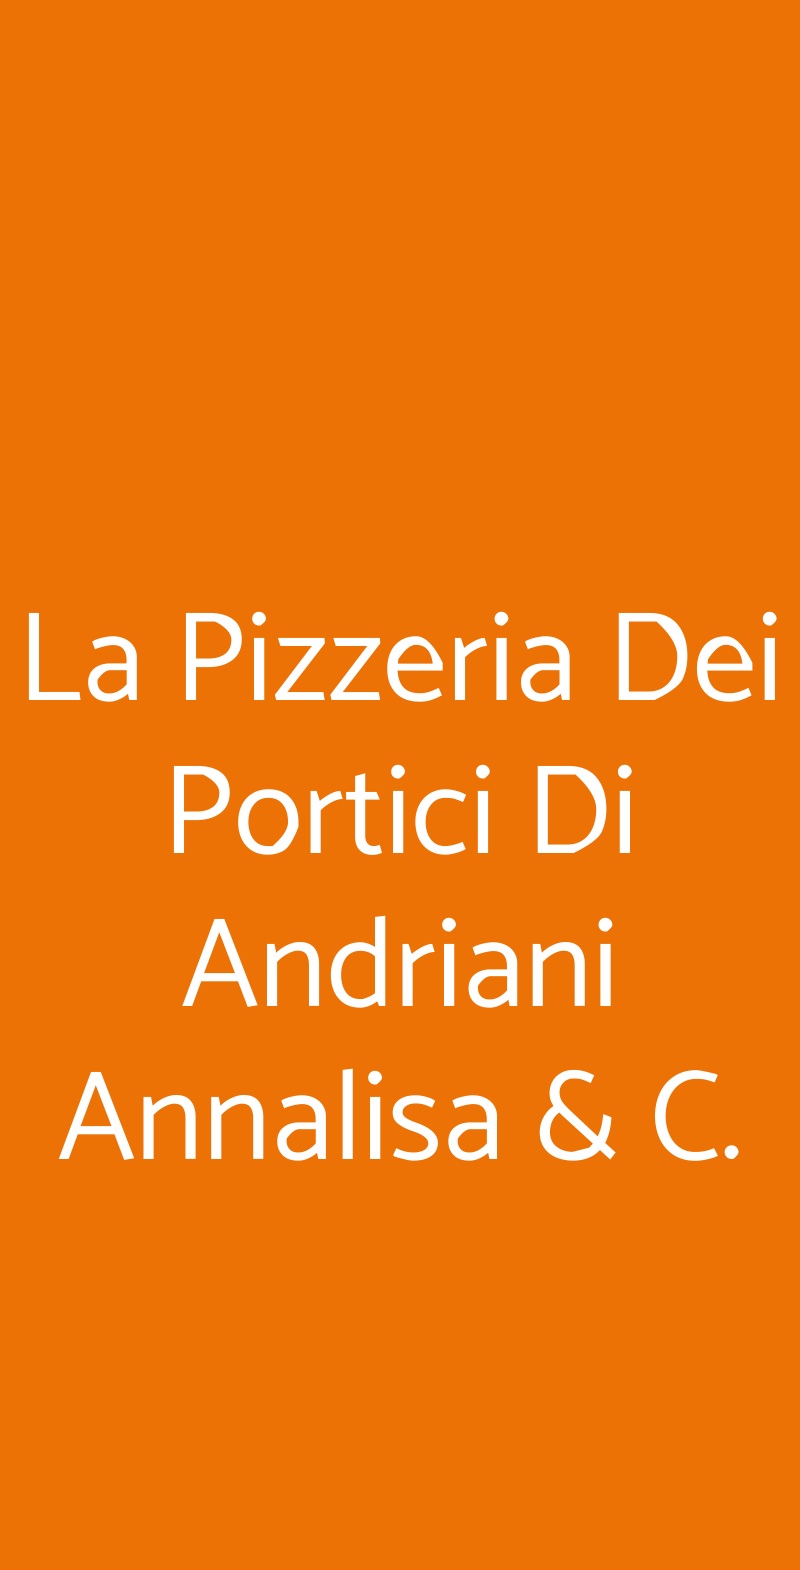 La Pizzeria Dei Portici Di Andriani Annalisa & C. Parabiago menù 1 pagina